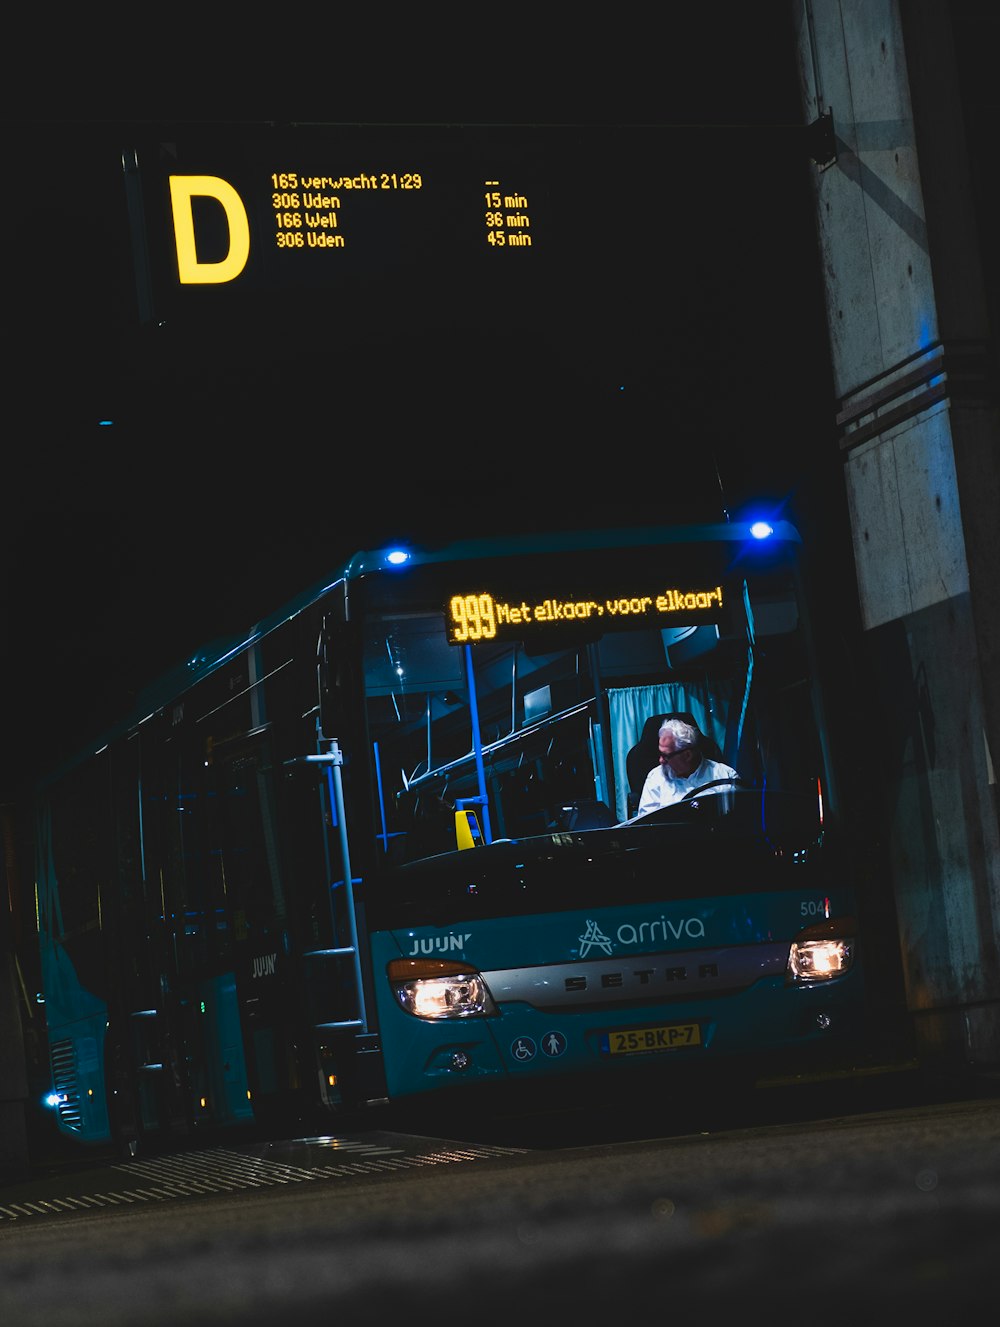 Uomo in camicia bianca che cavalca sull'autobus durante la notte